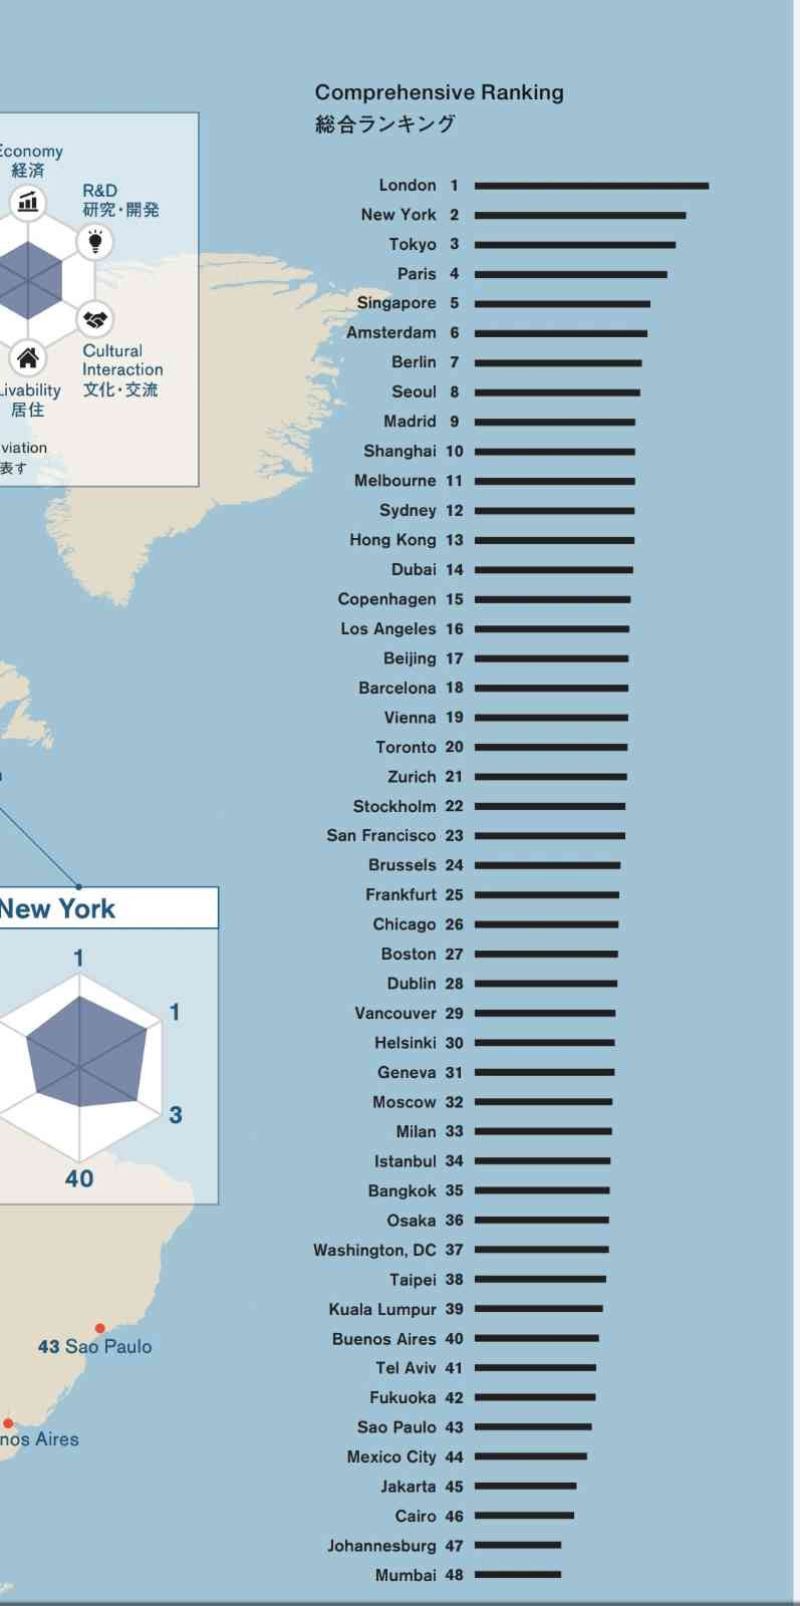 Dünyanın en yaşanılabilir ilk üç şehri: Londra, New York ve Tokyo
